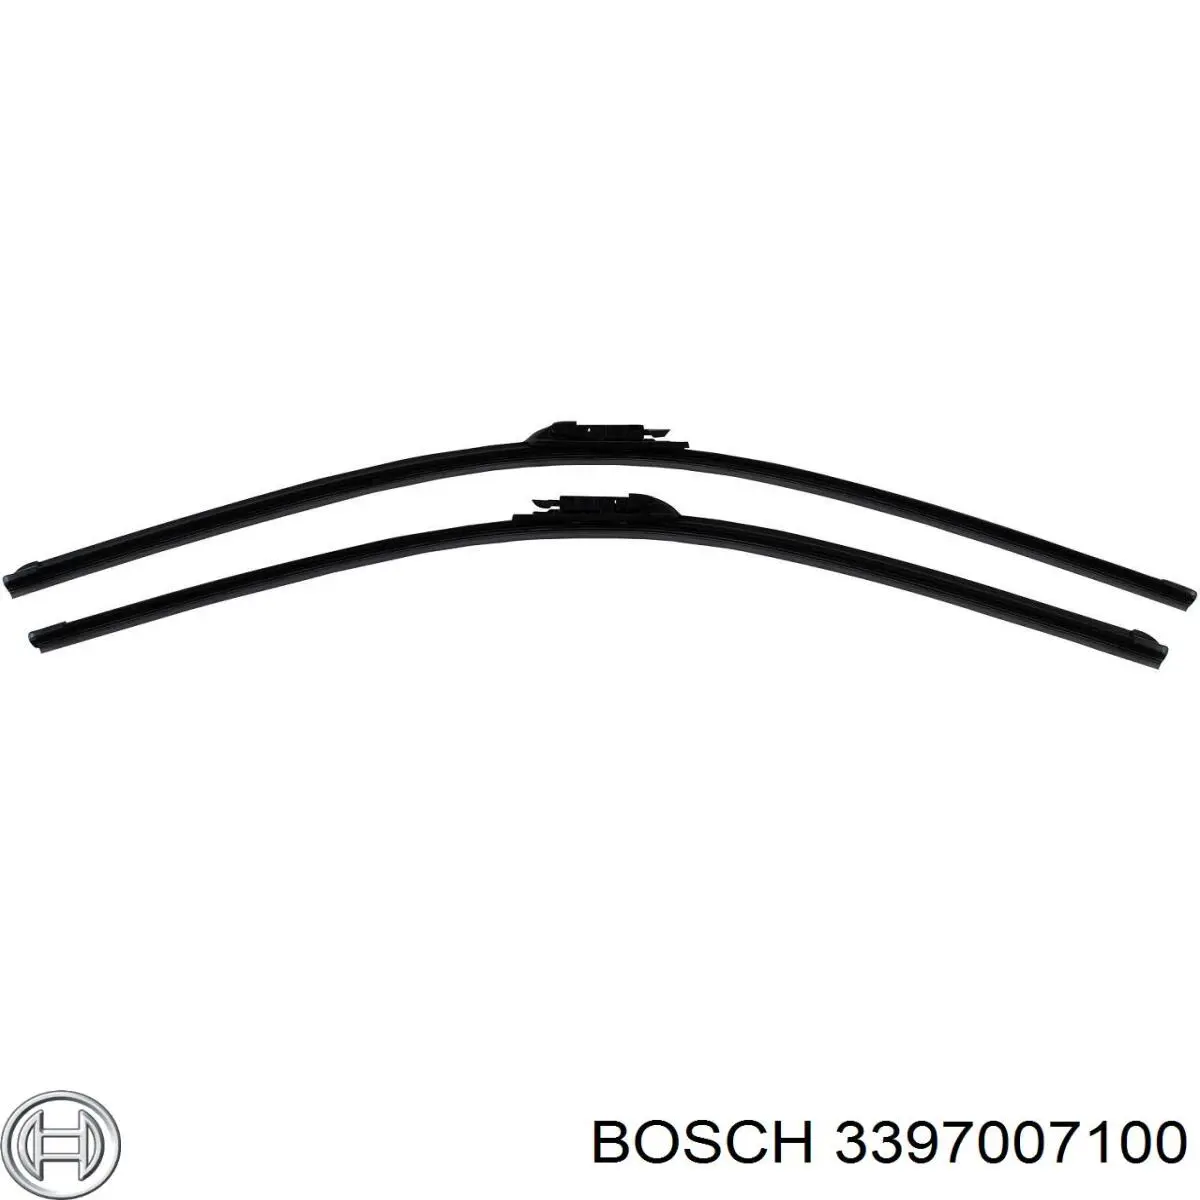 3397007100 Bosch limpiaparabrisas